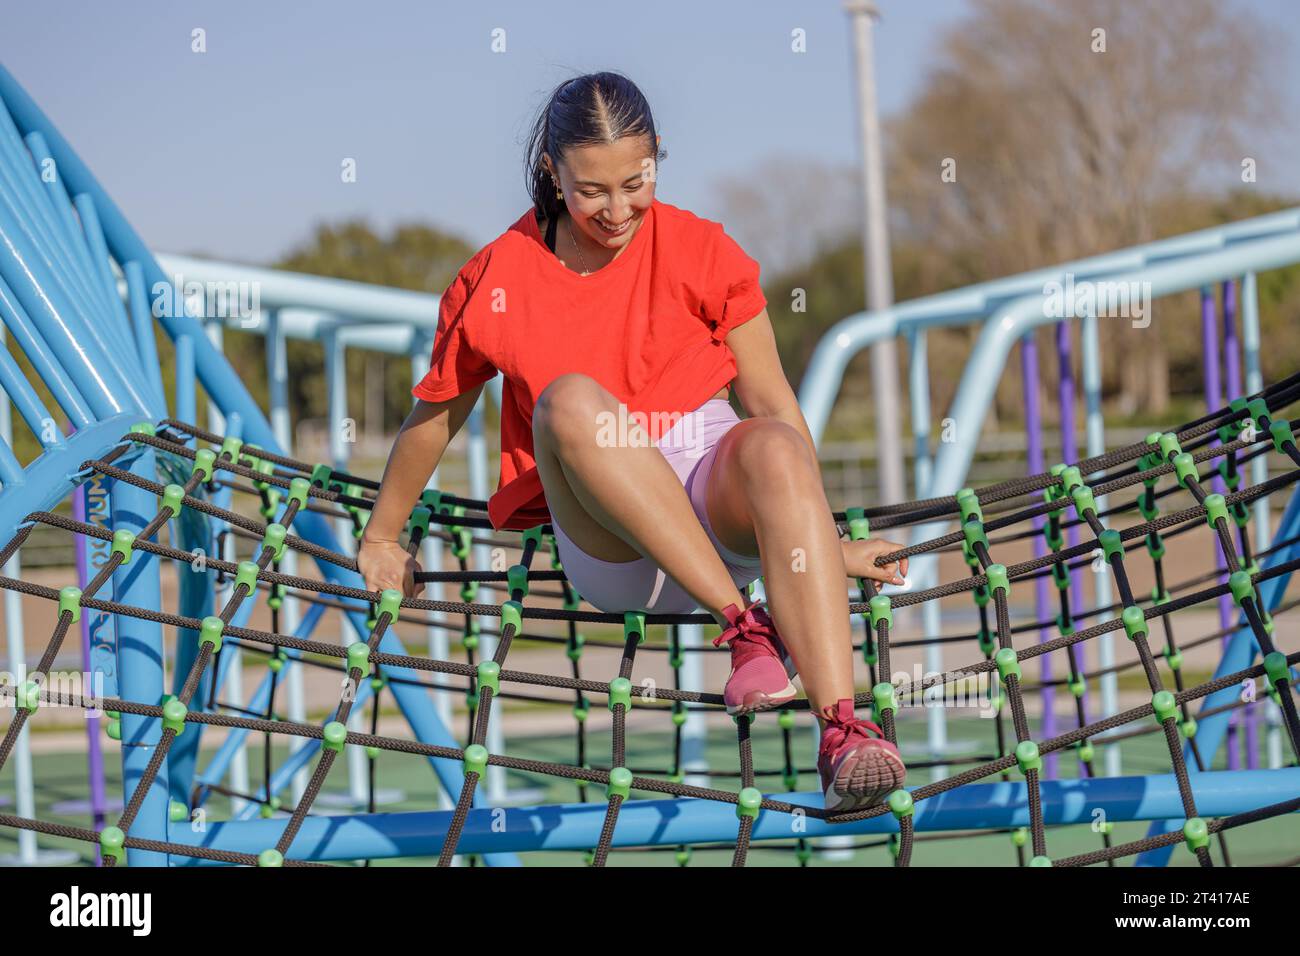 Latin girl climbing a net in a public park. Stock Photo